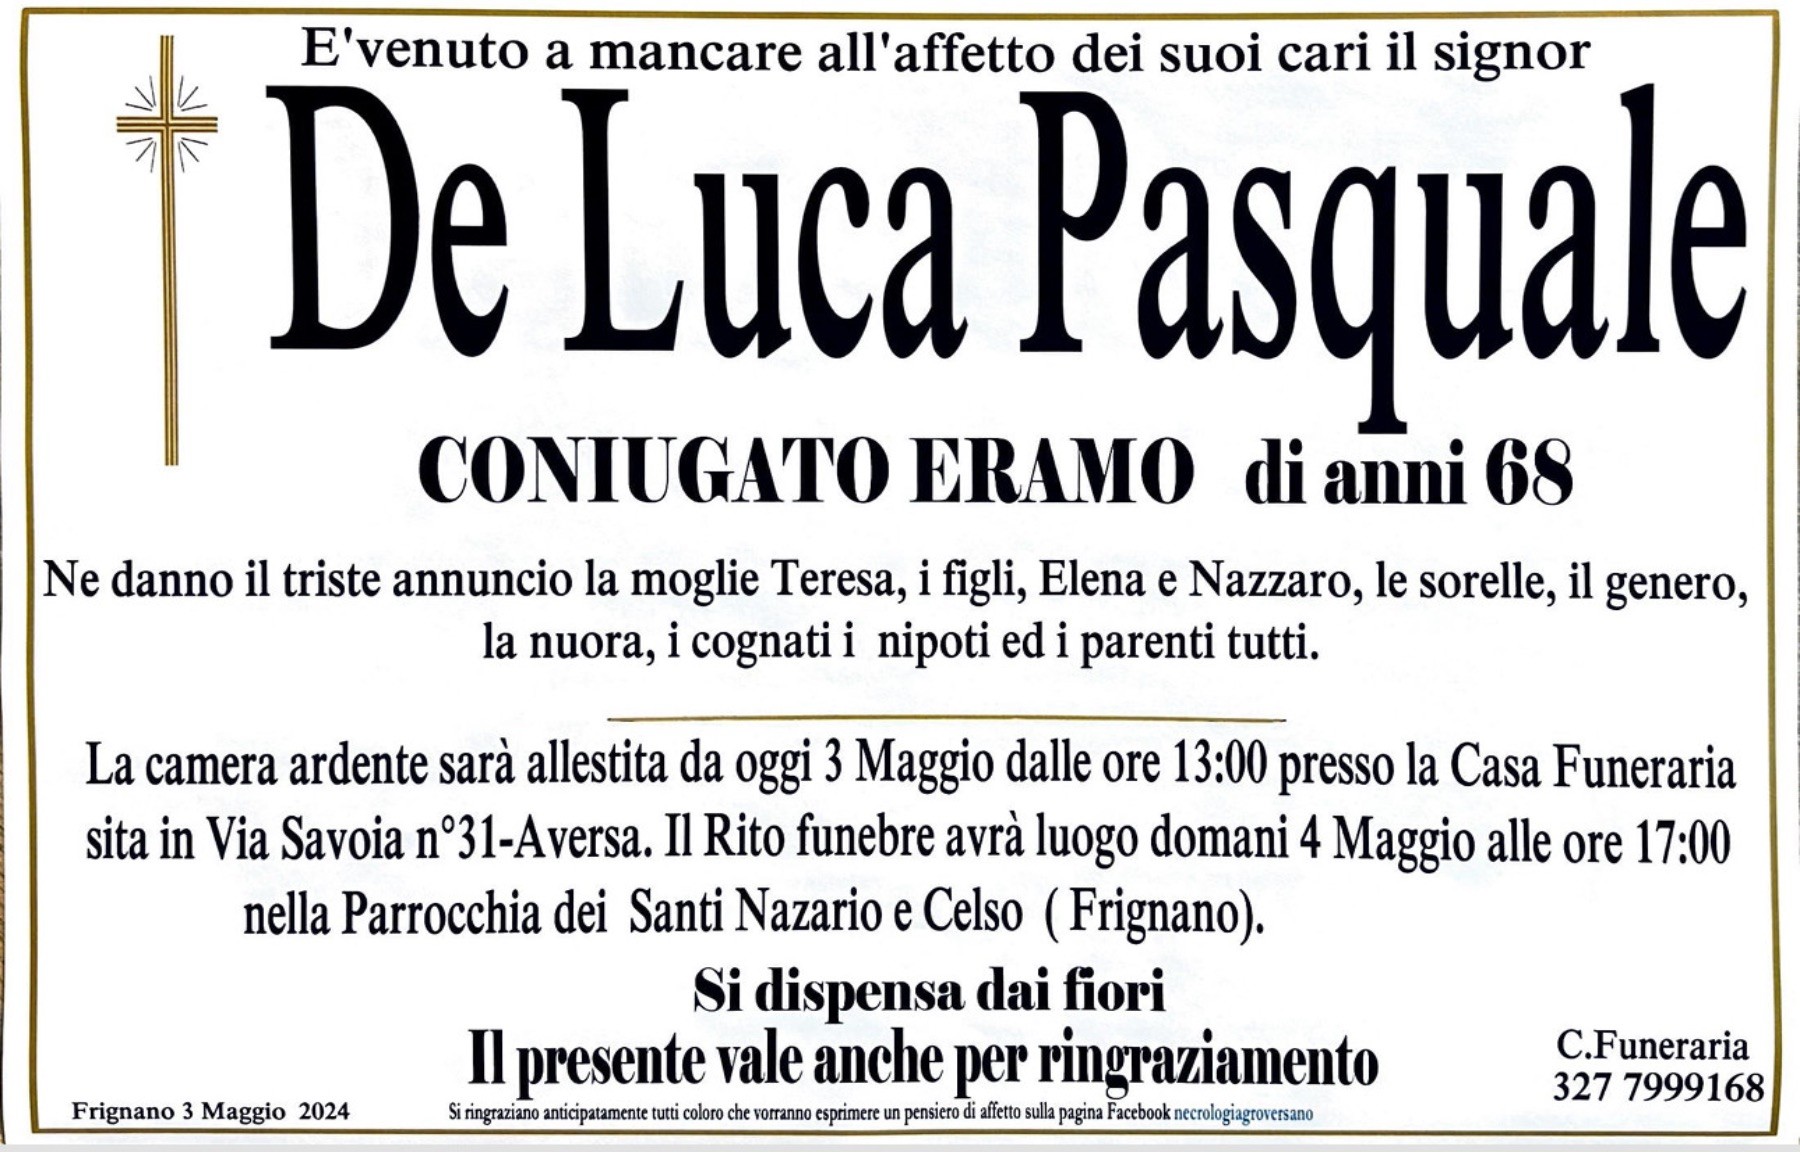 Pasquale De Luca